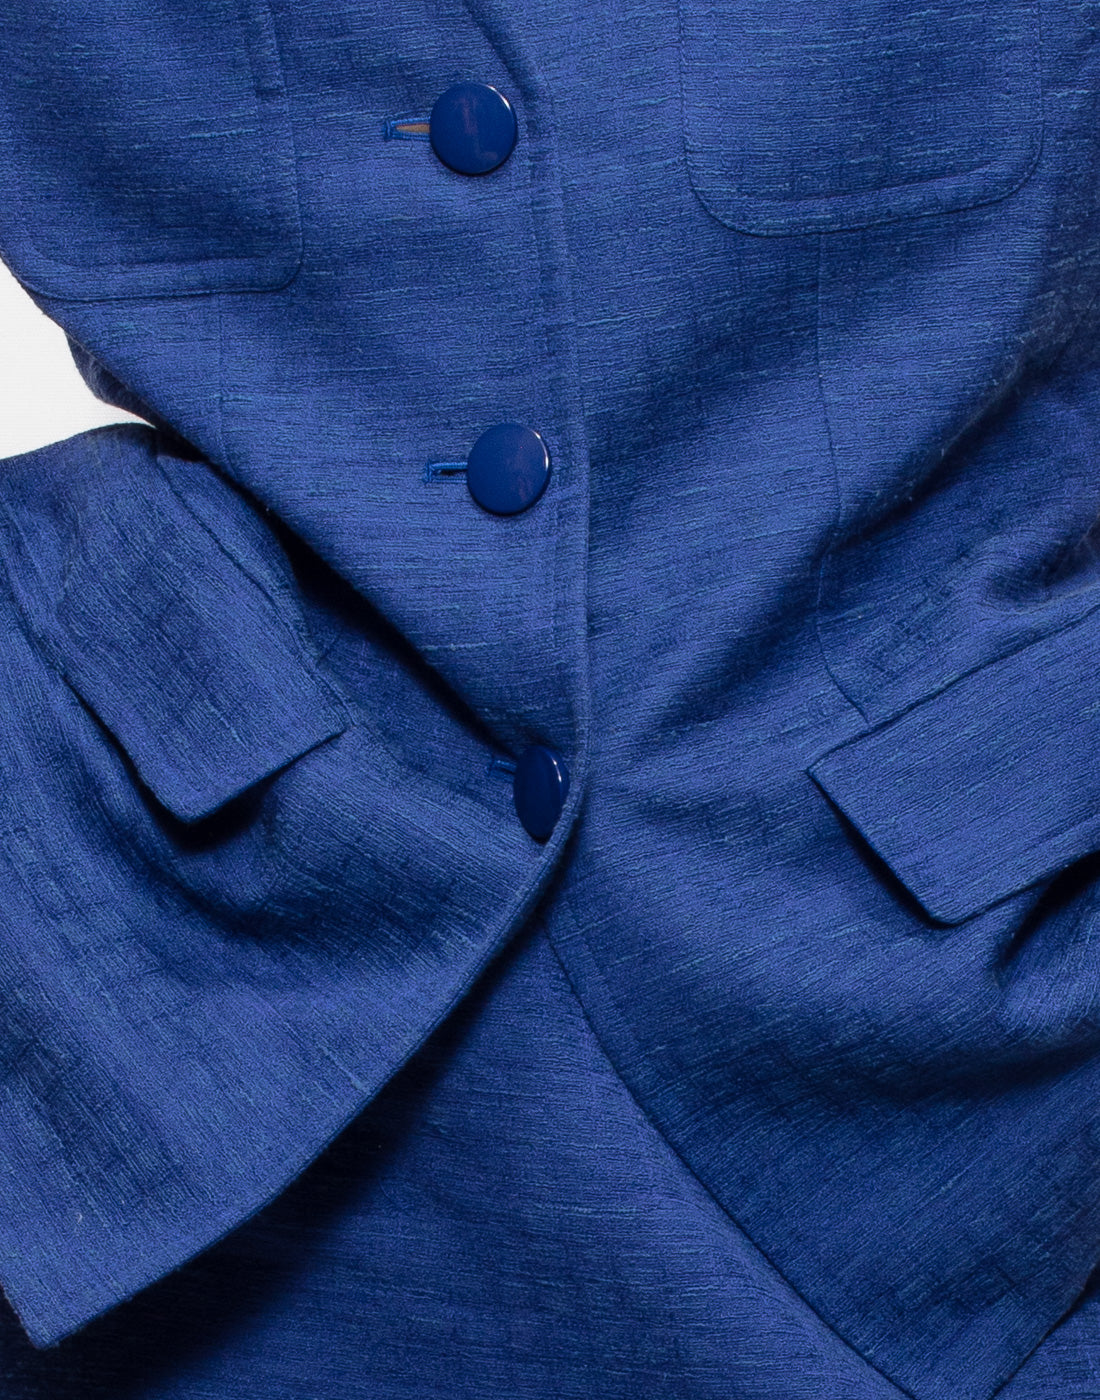 Vintage Yves Saint Laurent ocean blue jacket